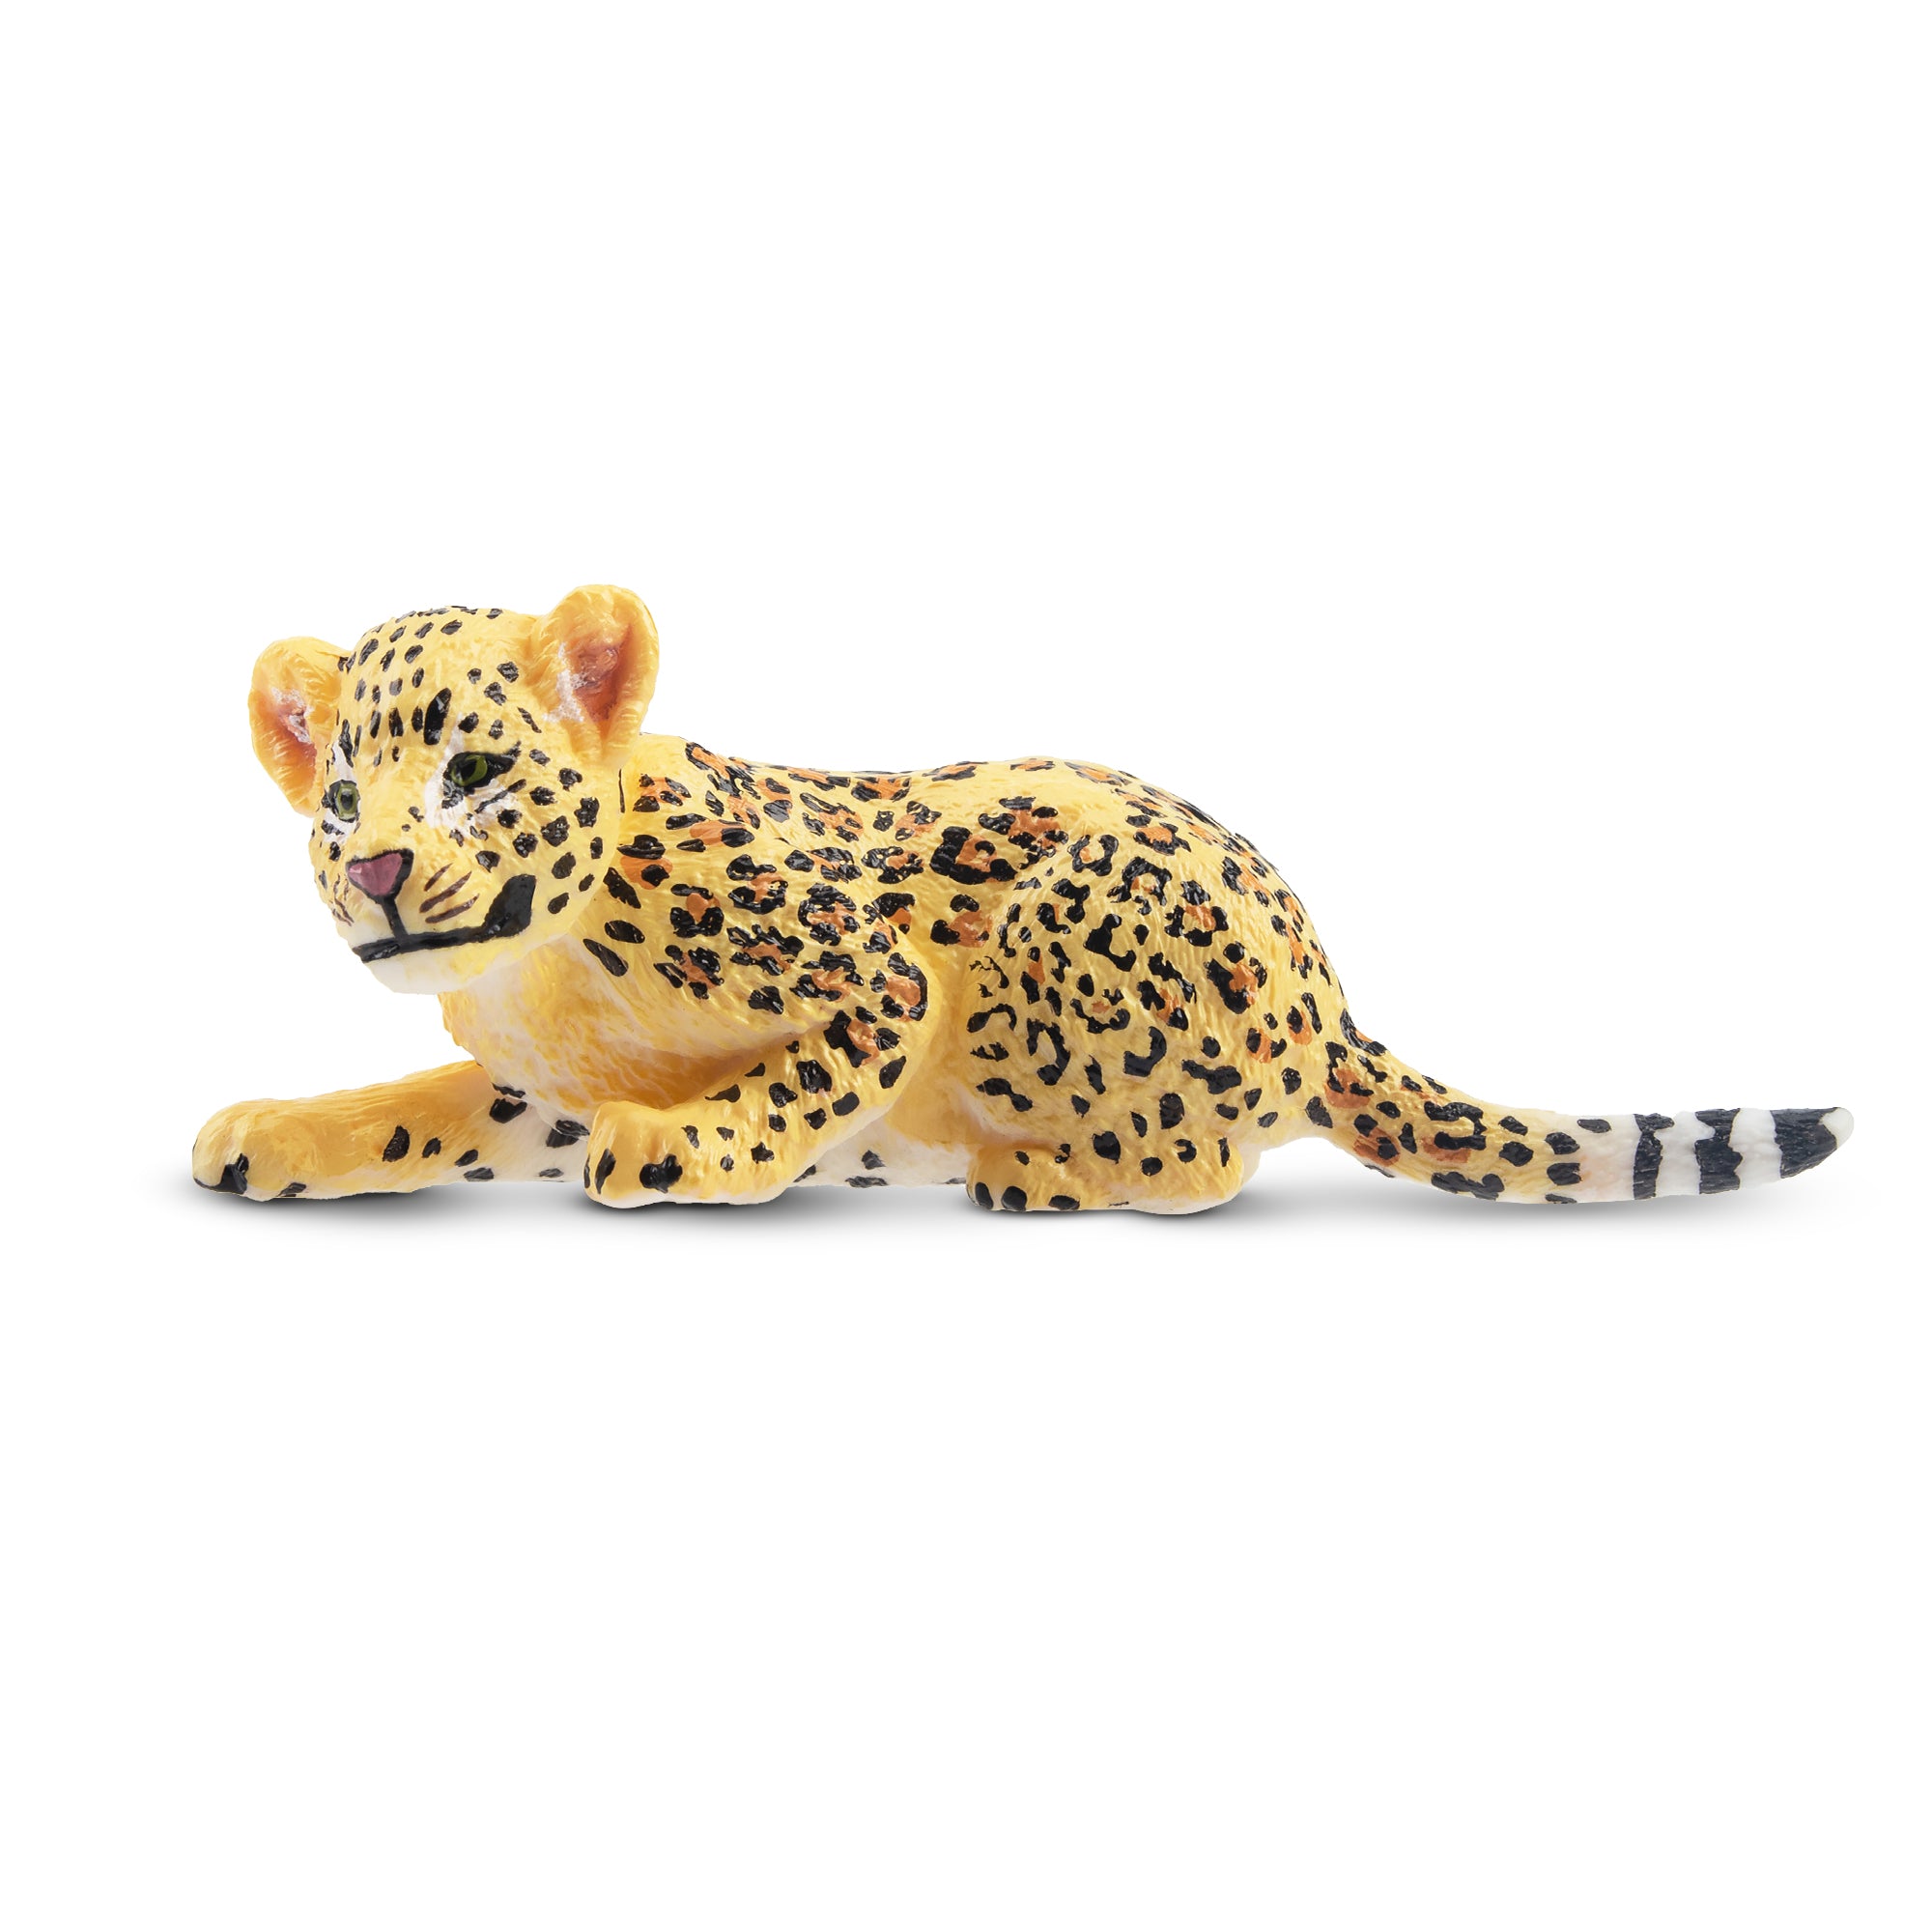 Toymany Lying Leopard Cub Figurine Toy